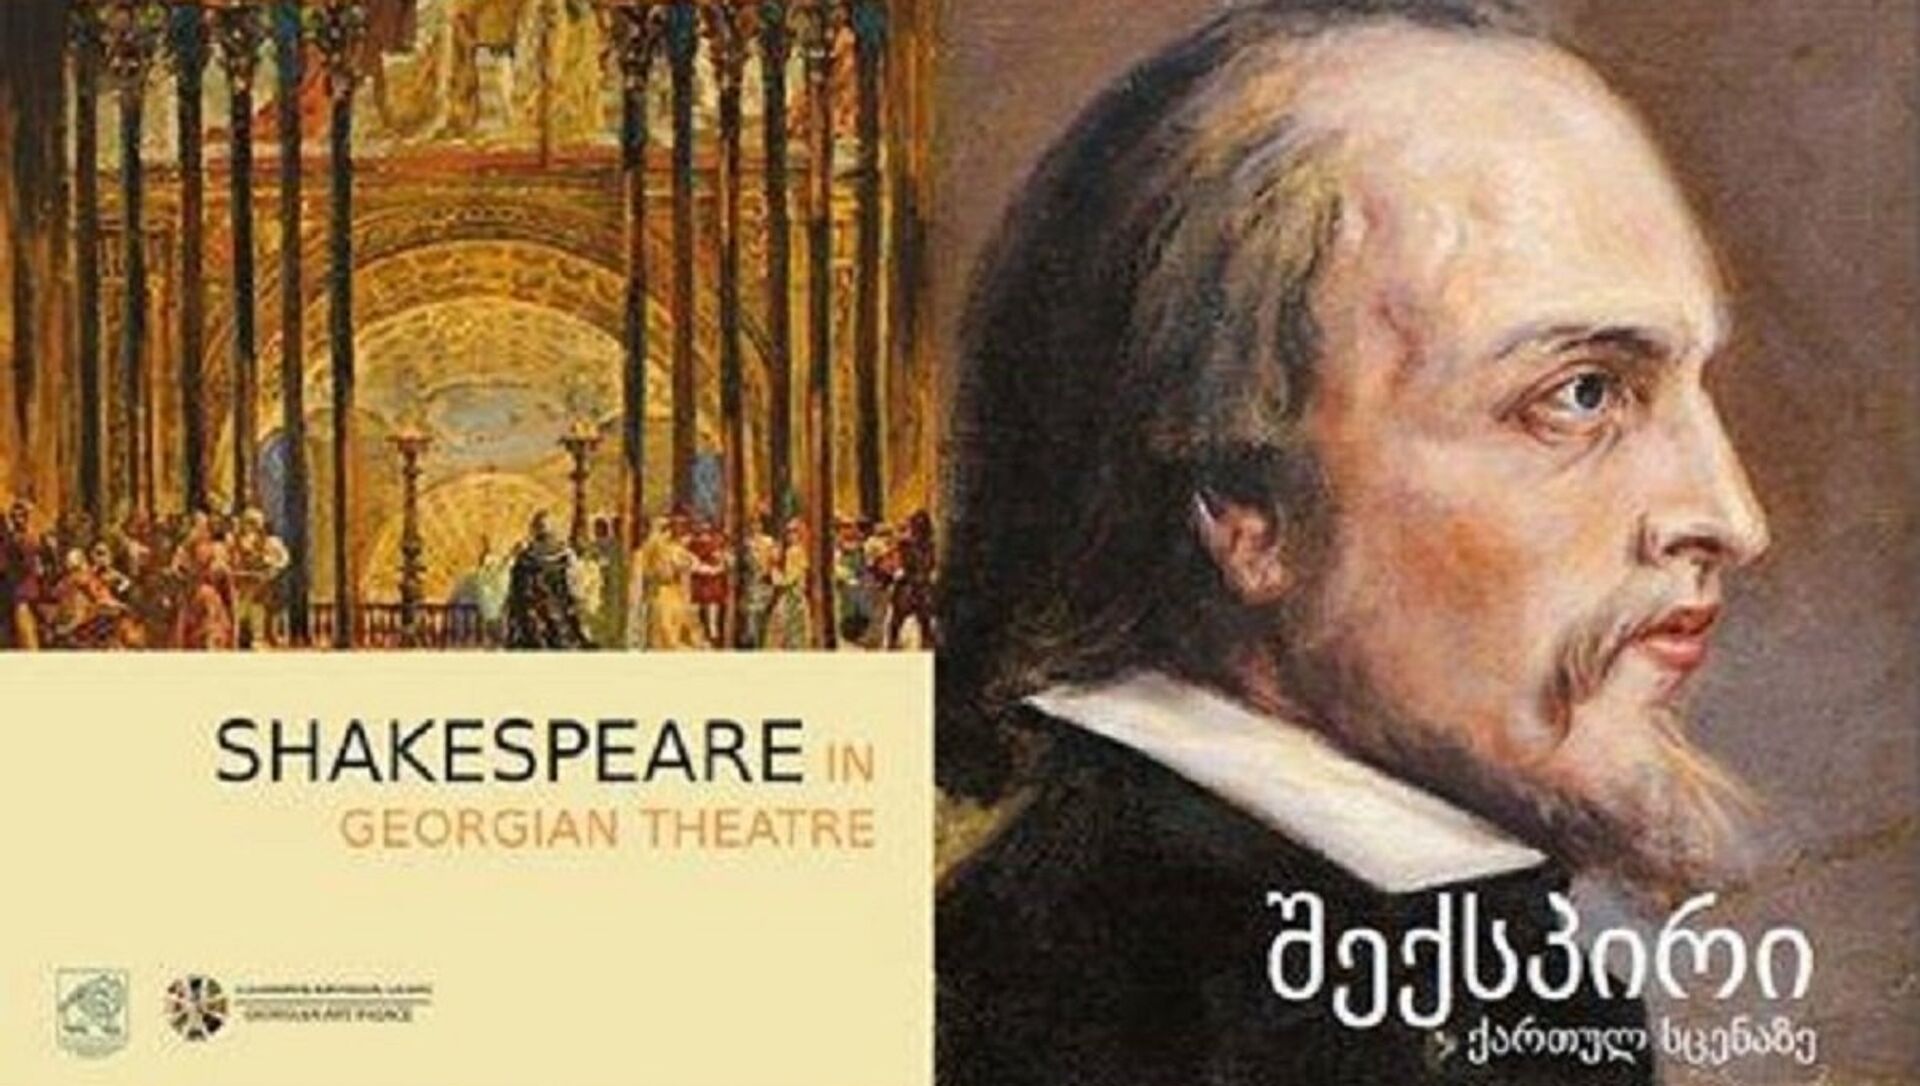 Шекспир выставки. Shakespeare Exhibition. Шекспир на армянской сцене книга. Шекспир выставка в библиотеке